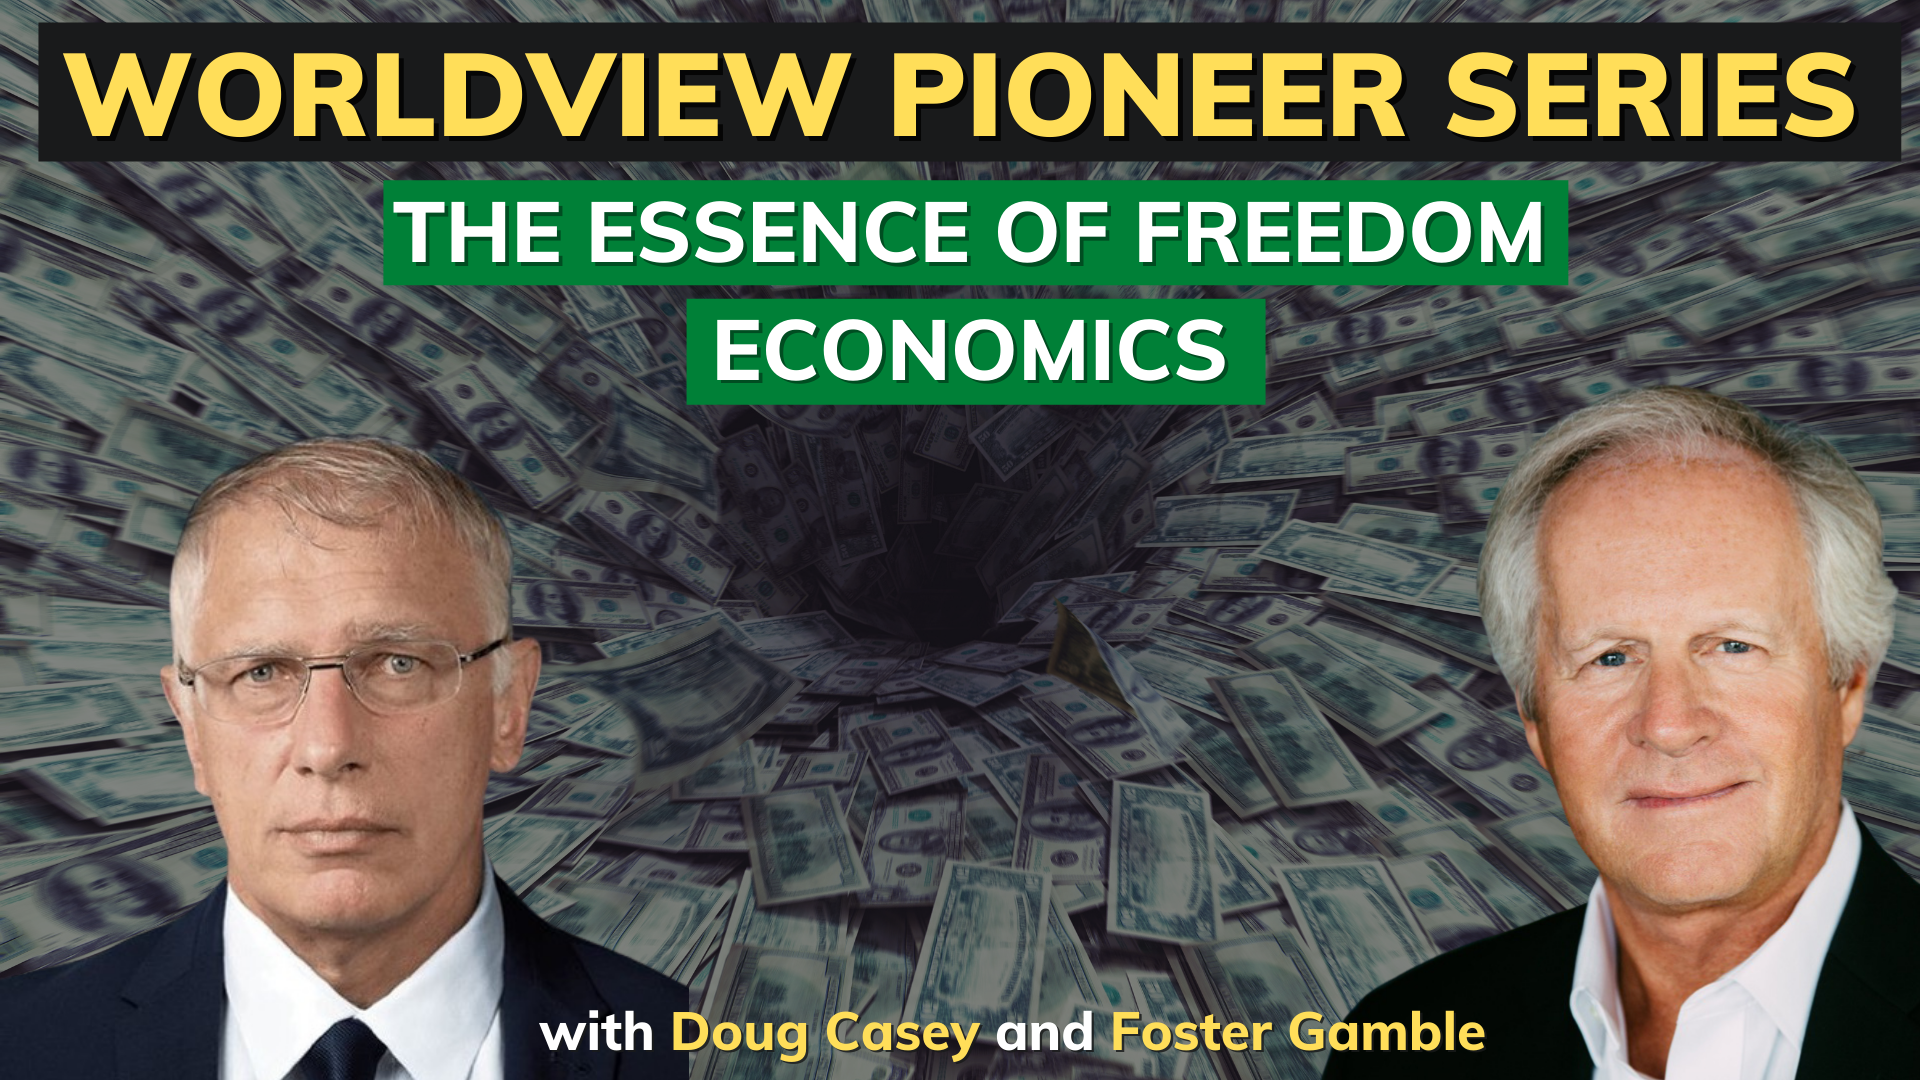 THE ESSENCE OF FREEDOM ECONOMICS